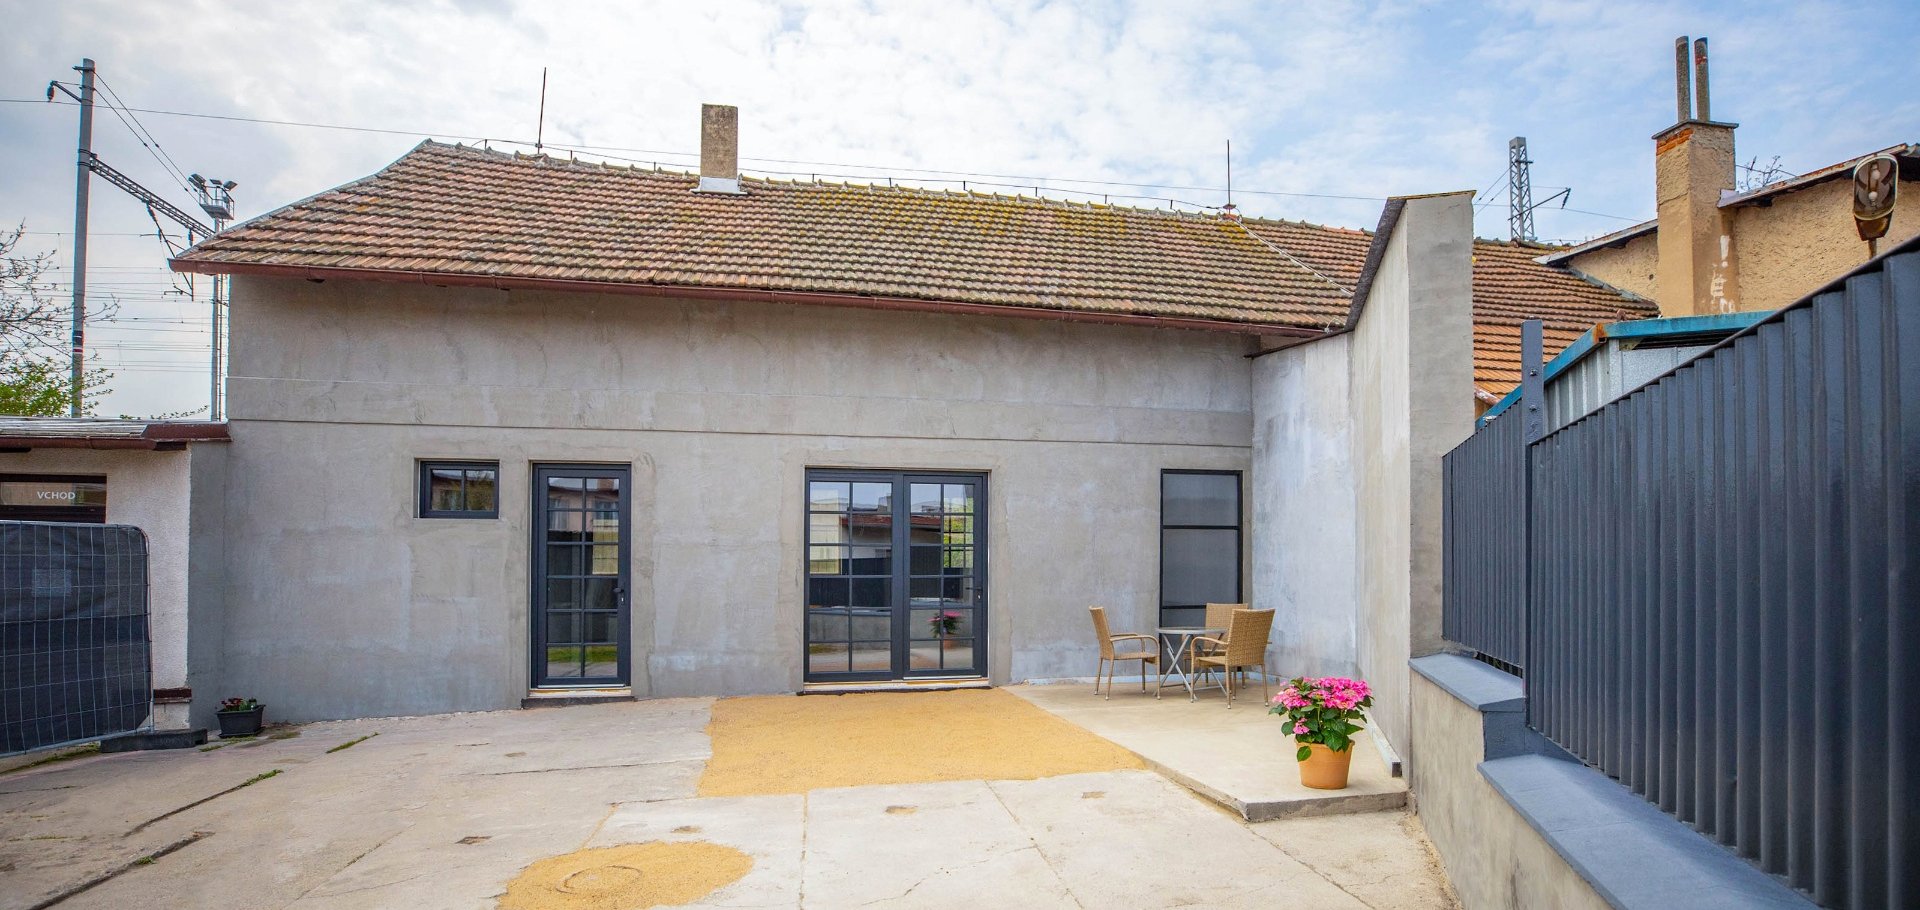 Prodej rozestavěného rodinného domu, 4+1, 105 m2 se zahradou 120 m2 a garáží 37 m2, Český Brod.